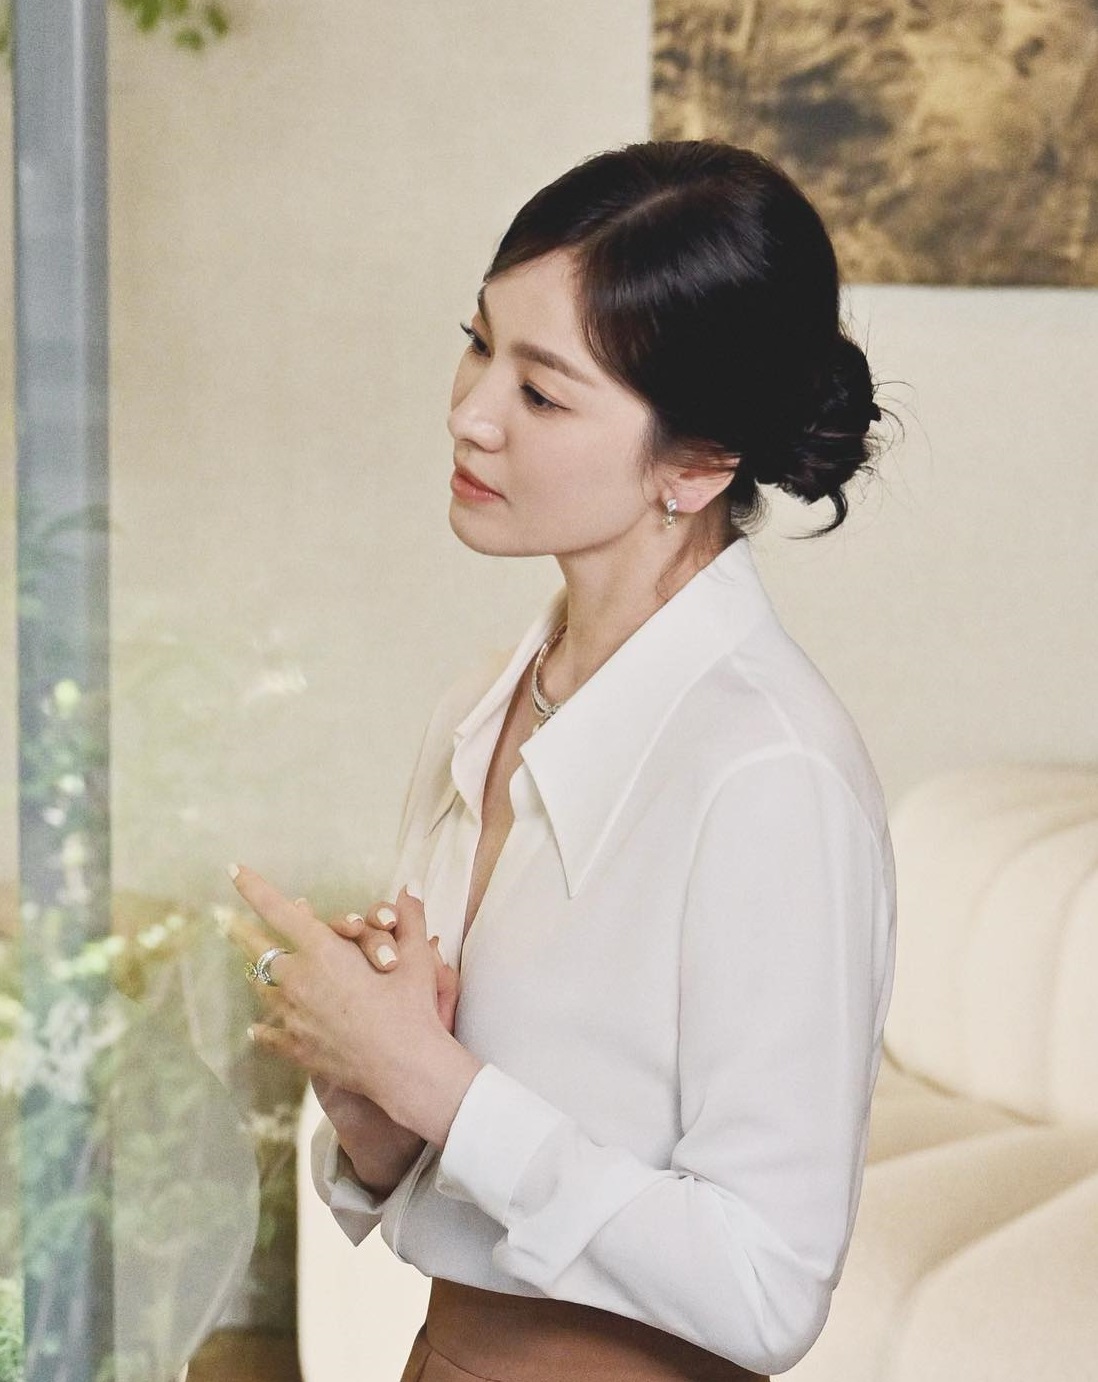 Tham khảo Song Hye Kyo 4 cách buộc tóc sang trọng dành cho phụ nữ trên 40 tuổi - Ảnh 2.